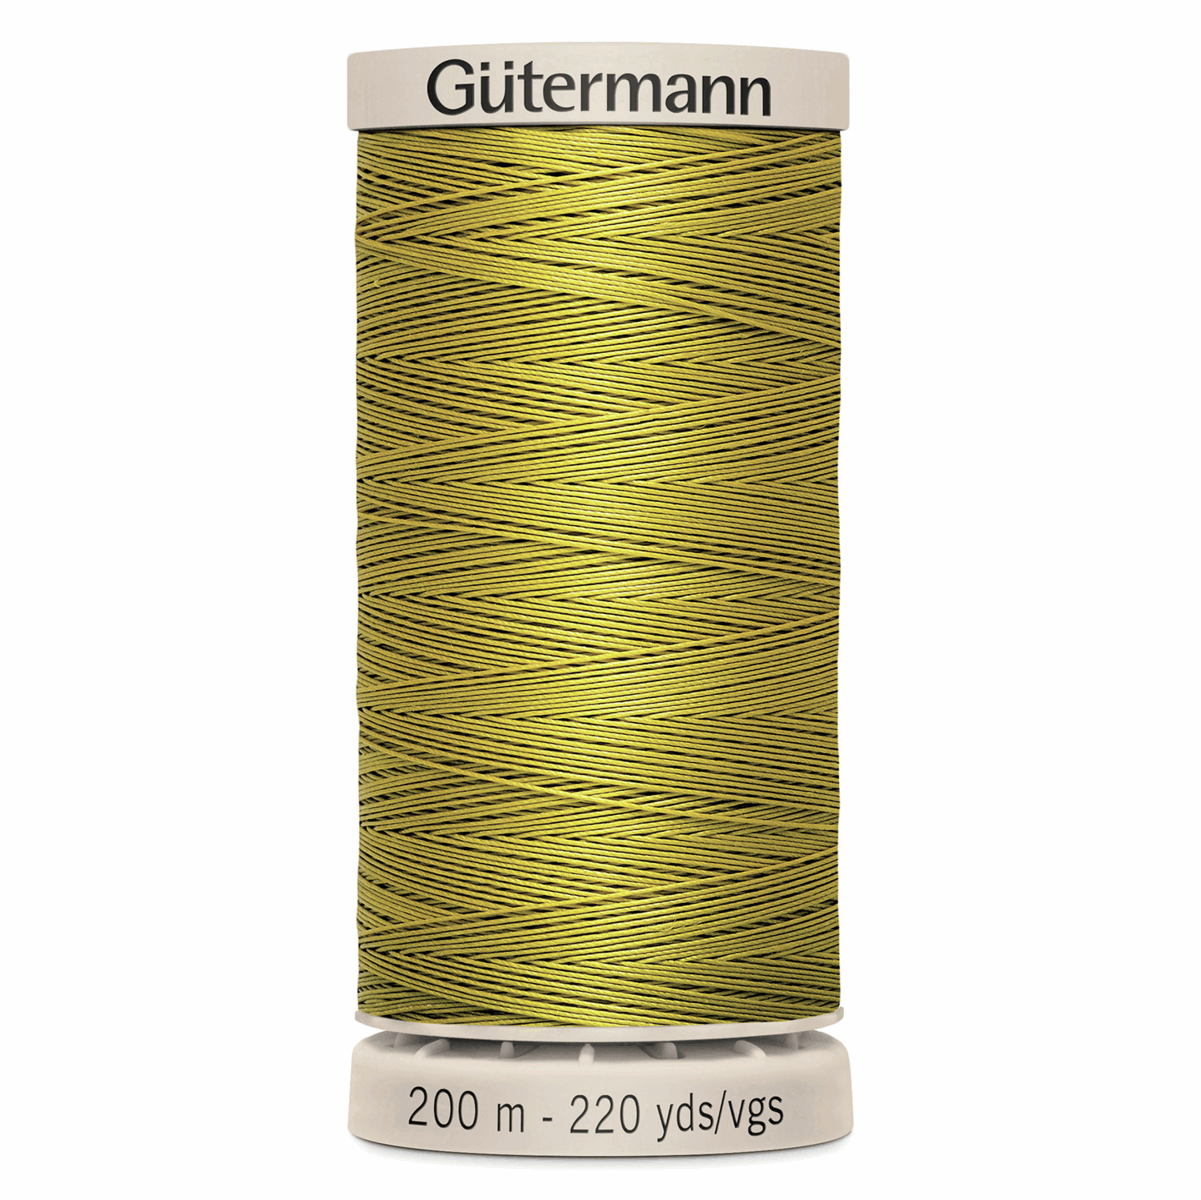 Gutermann Quilting Thread 200m - Colour 956